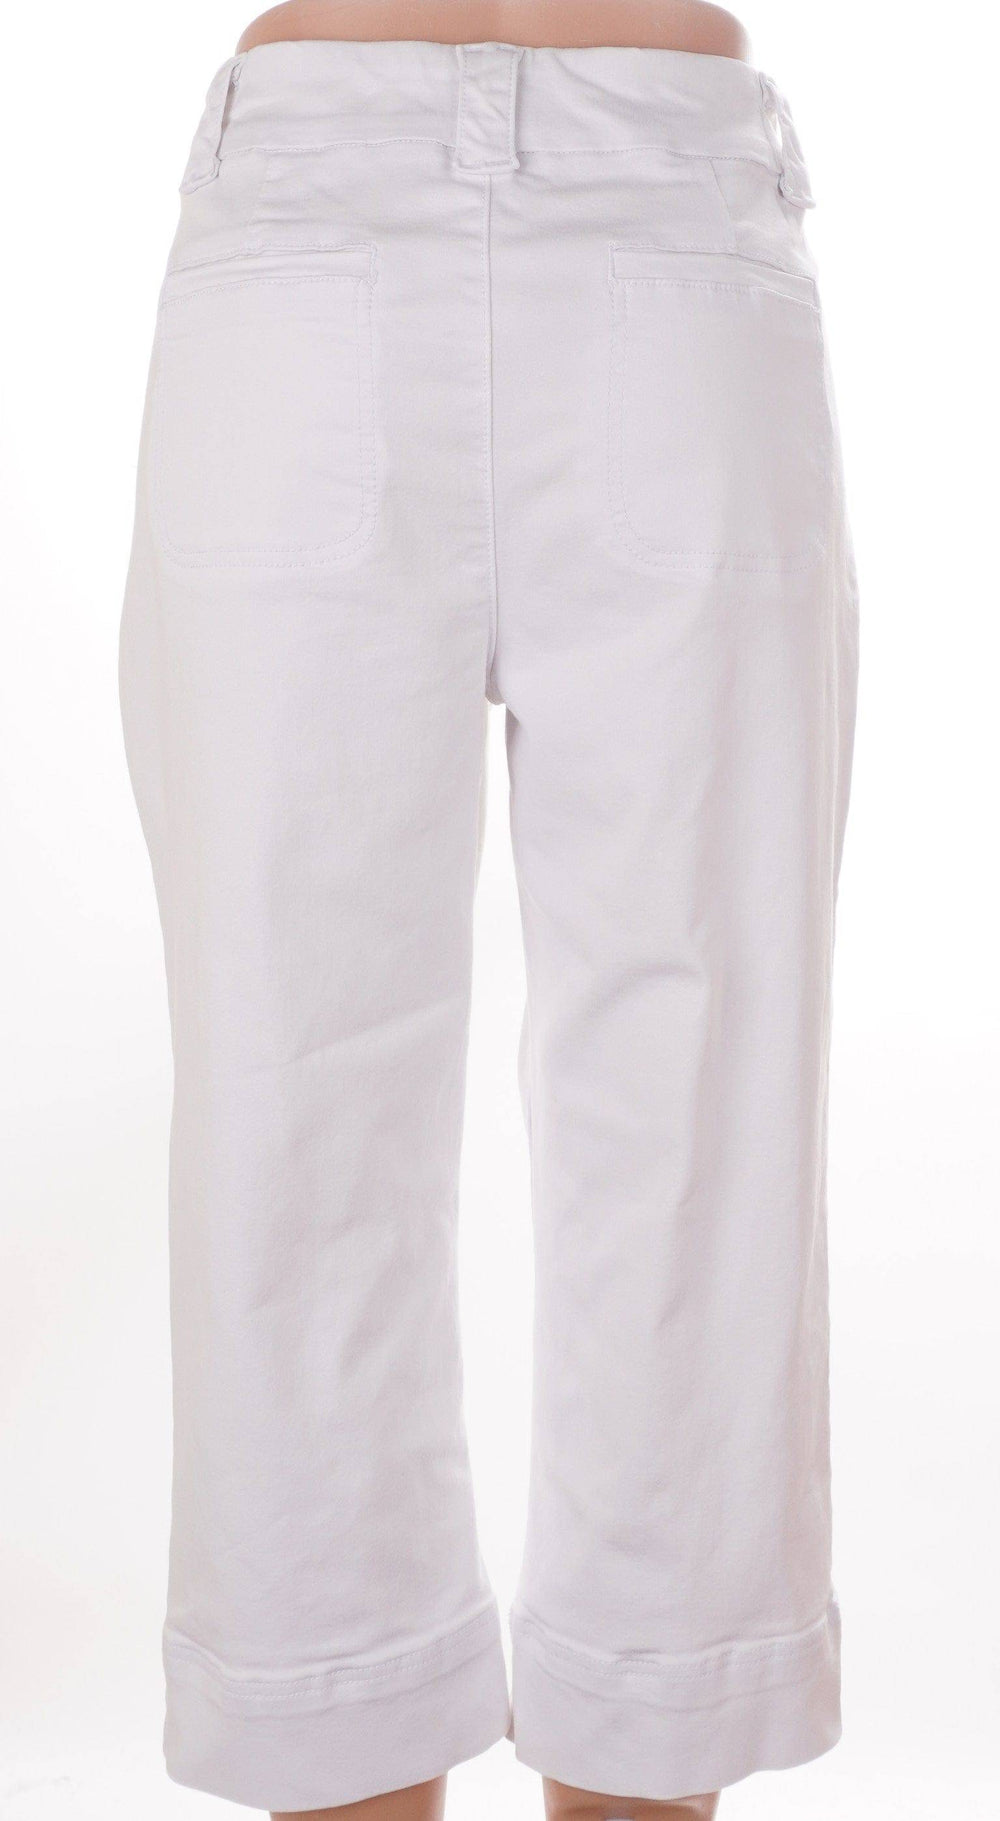 Rekucci Jeans White / 12 / Consigned Rekucci Jeans - White - Size 12